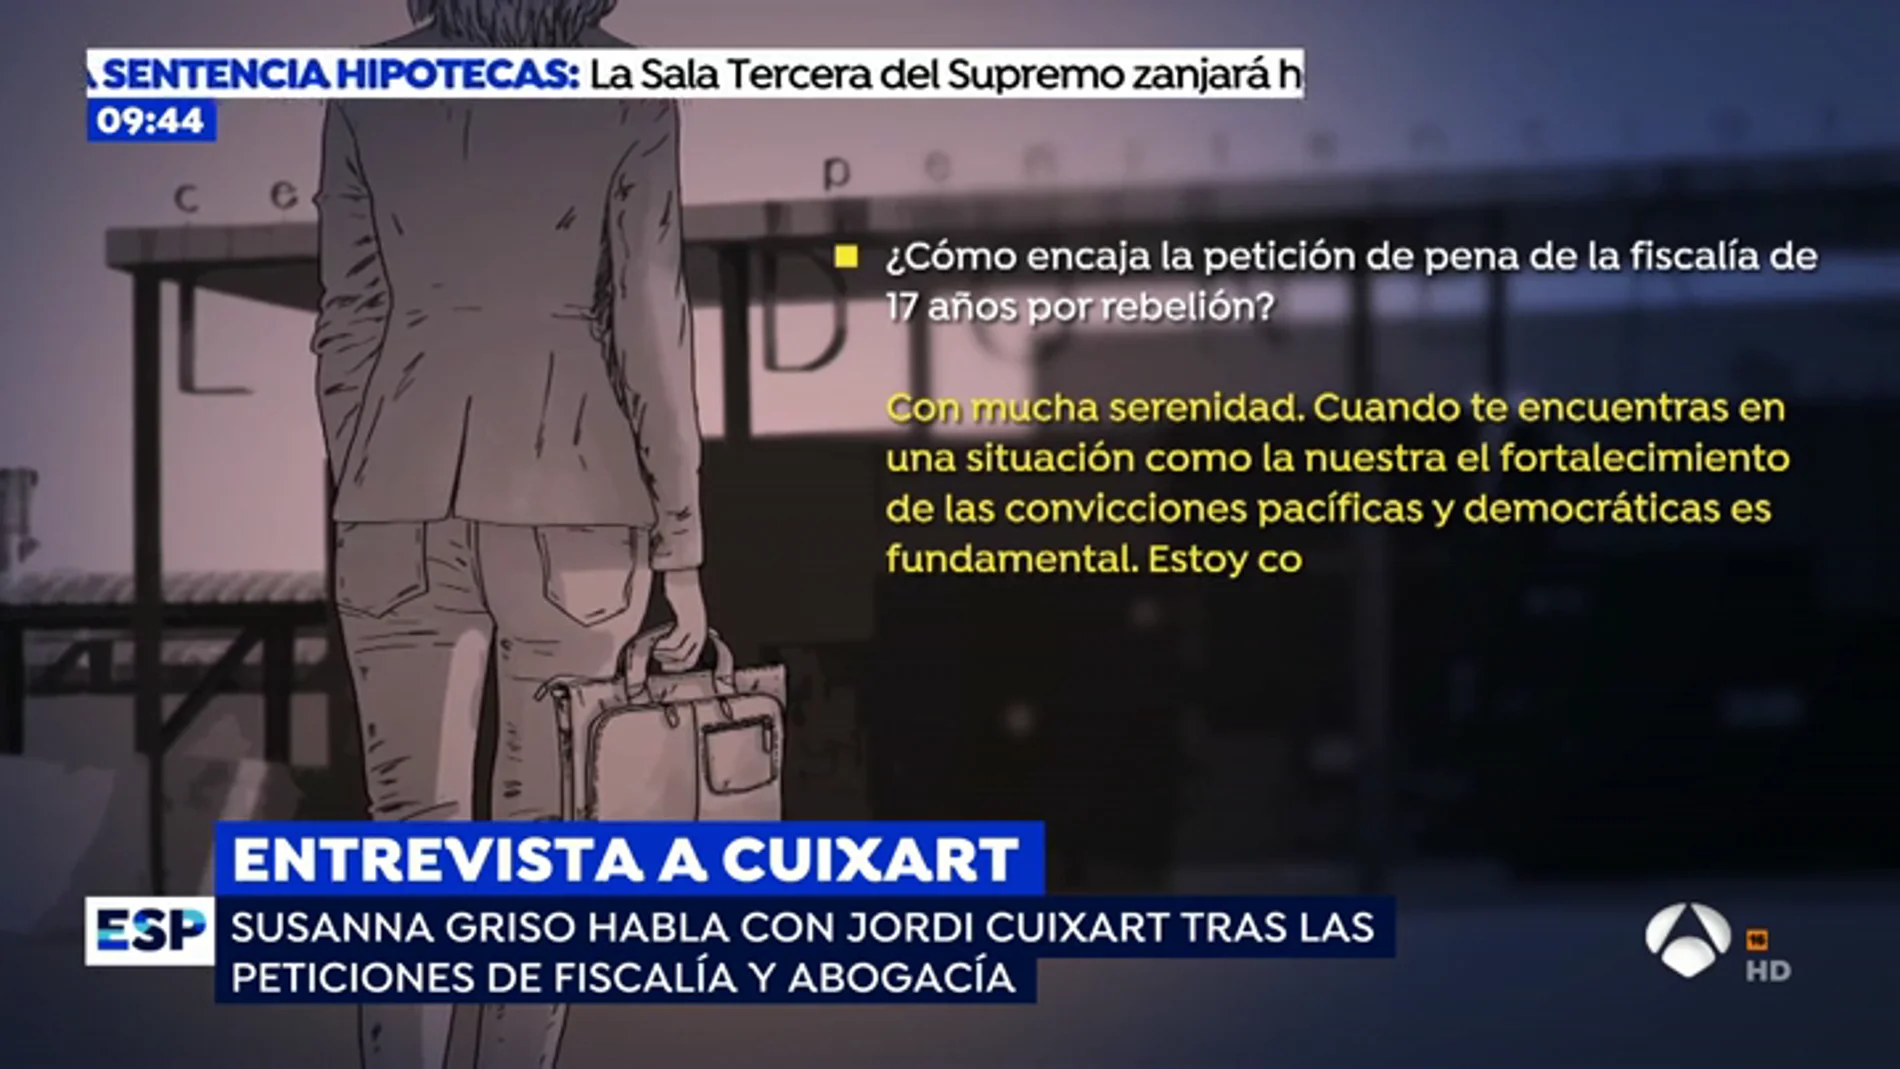 Susanna Griso entra en la cárcel de Llenoners para entrevistar a Jordi Cuixart: "El coste personal es alto pero lo volvería a hacer"